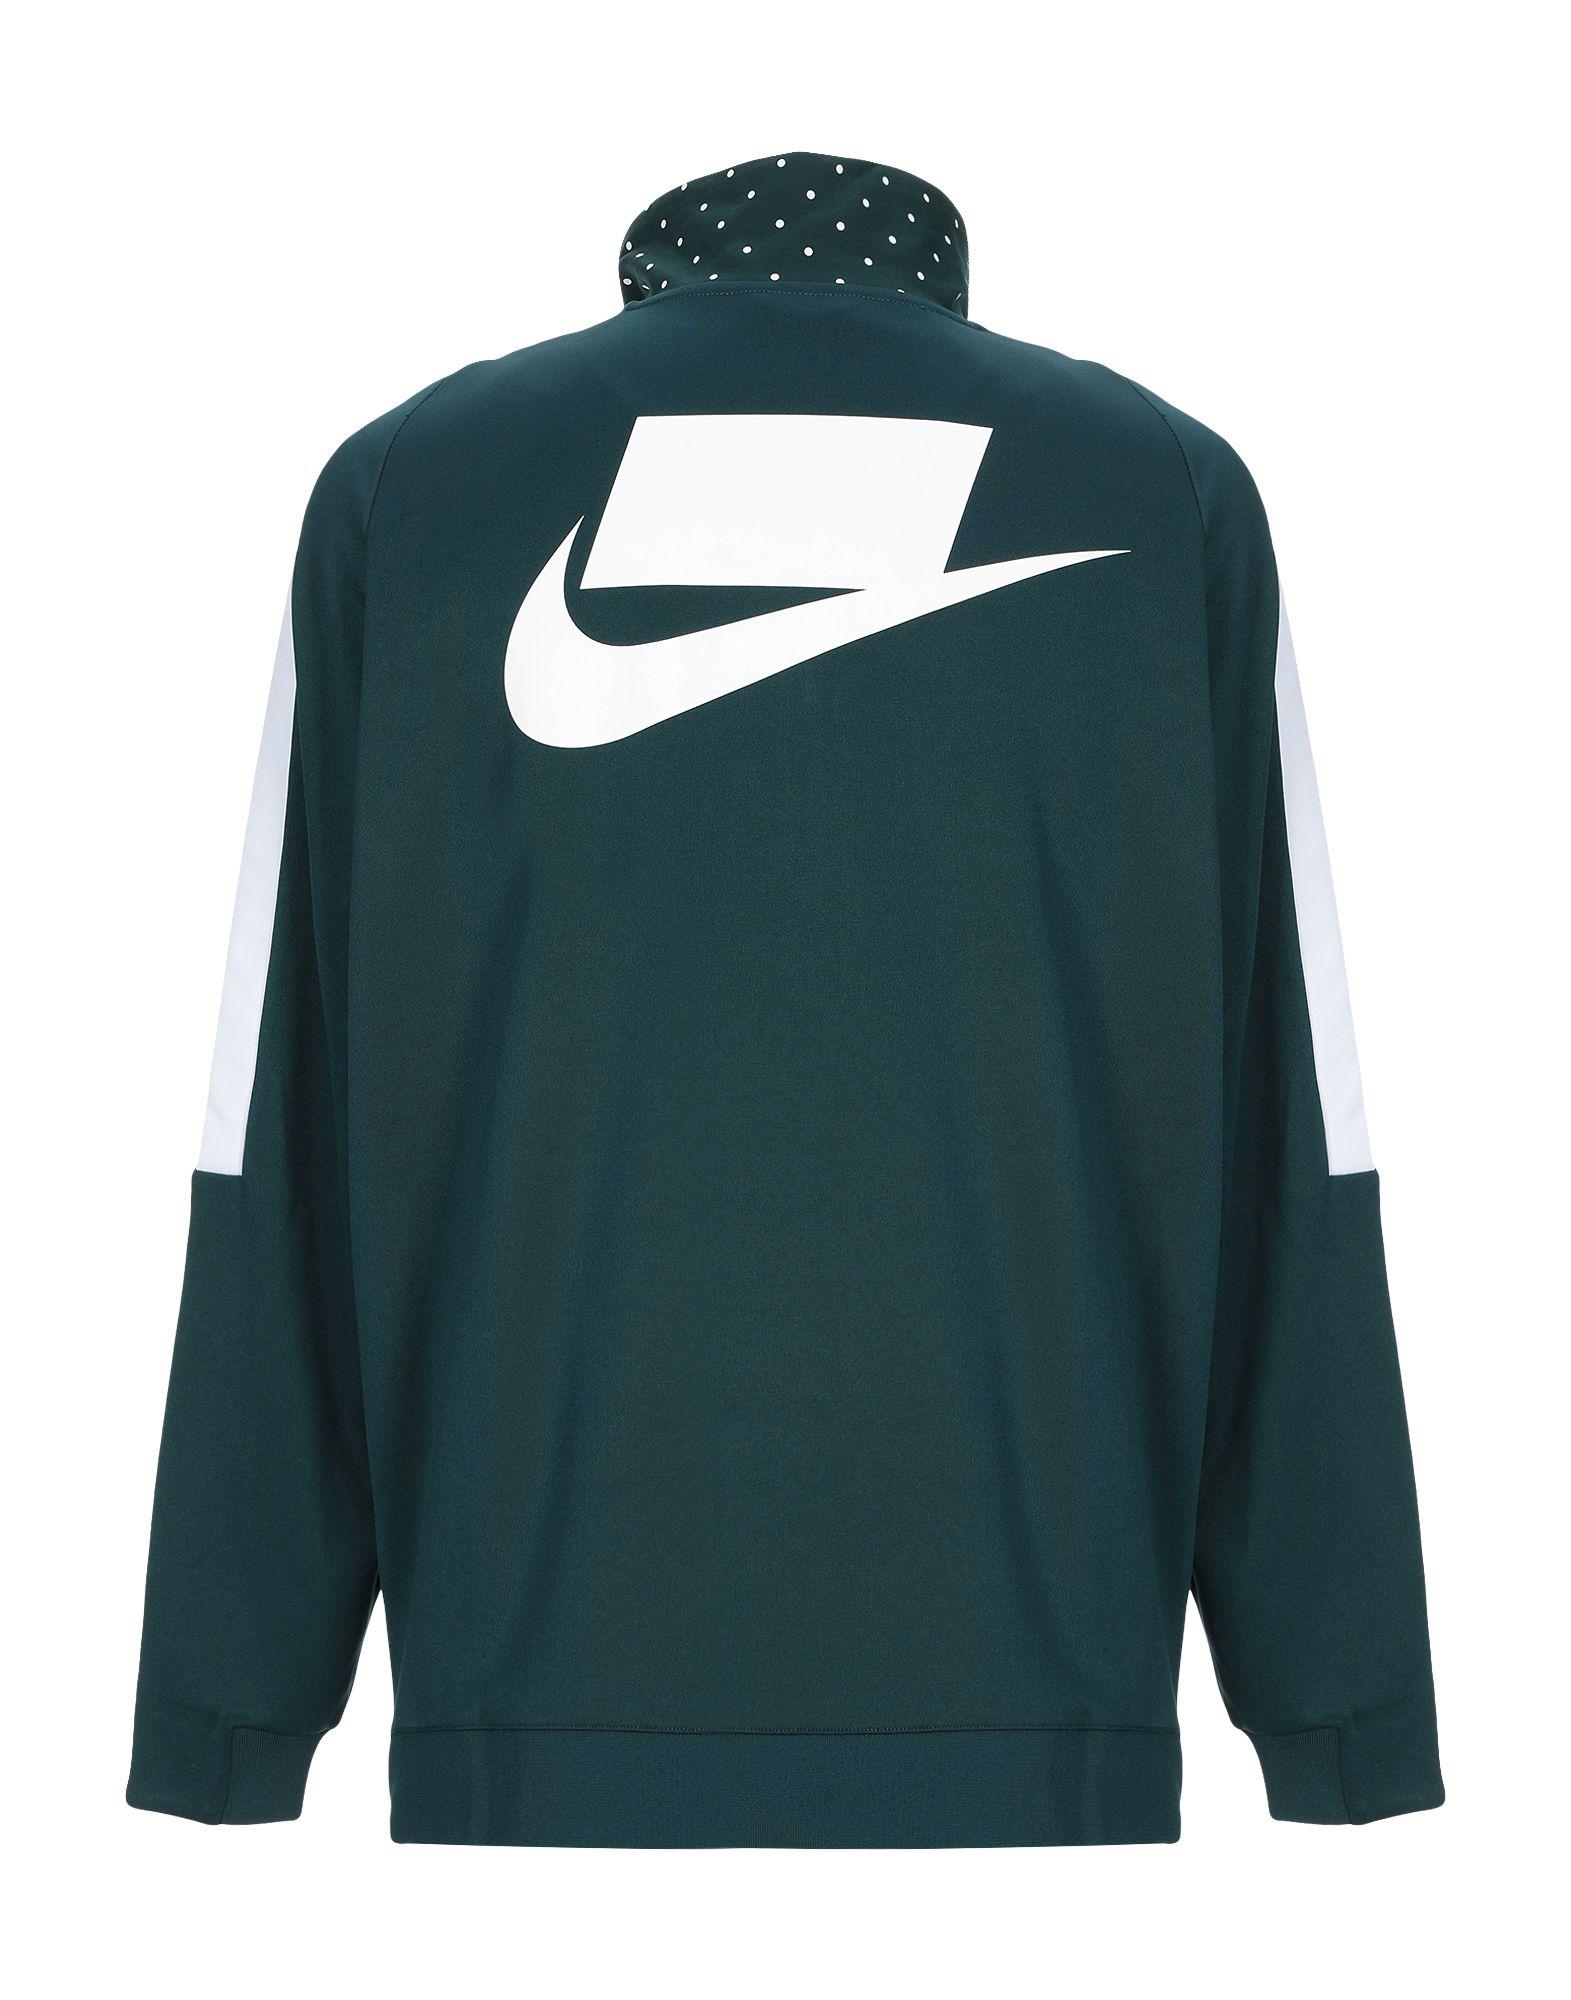 Nike Synthetic Sweatshirt in Dark Blue (Blue) for Men - Lyst